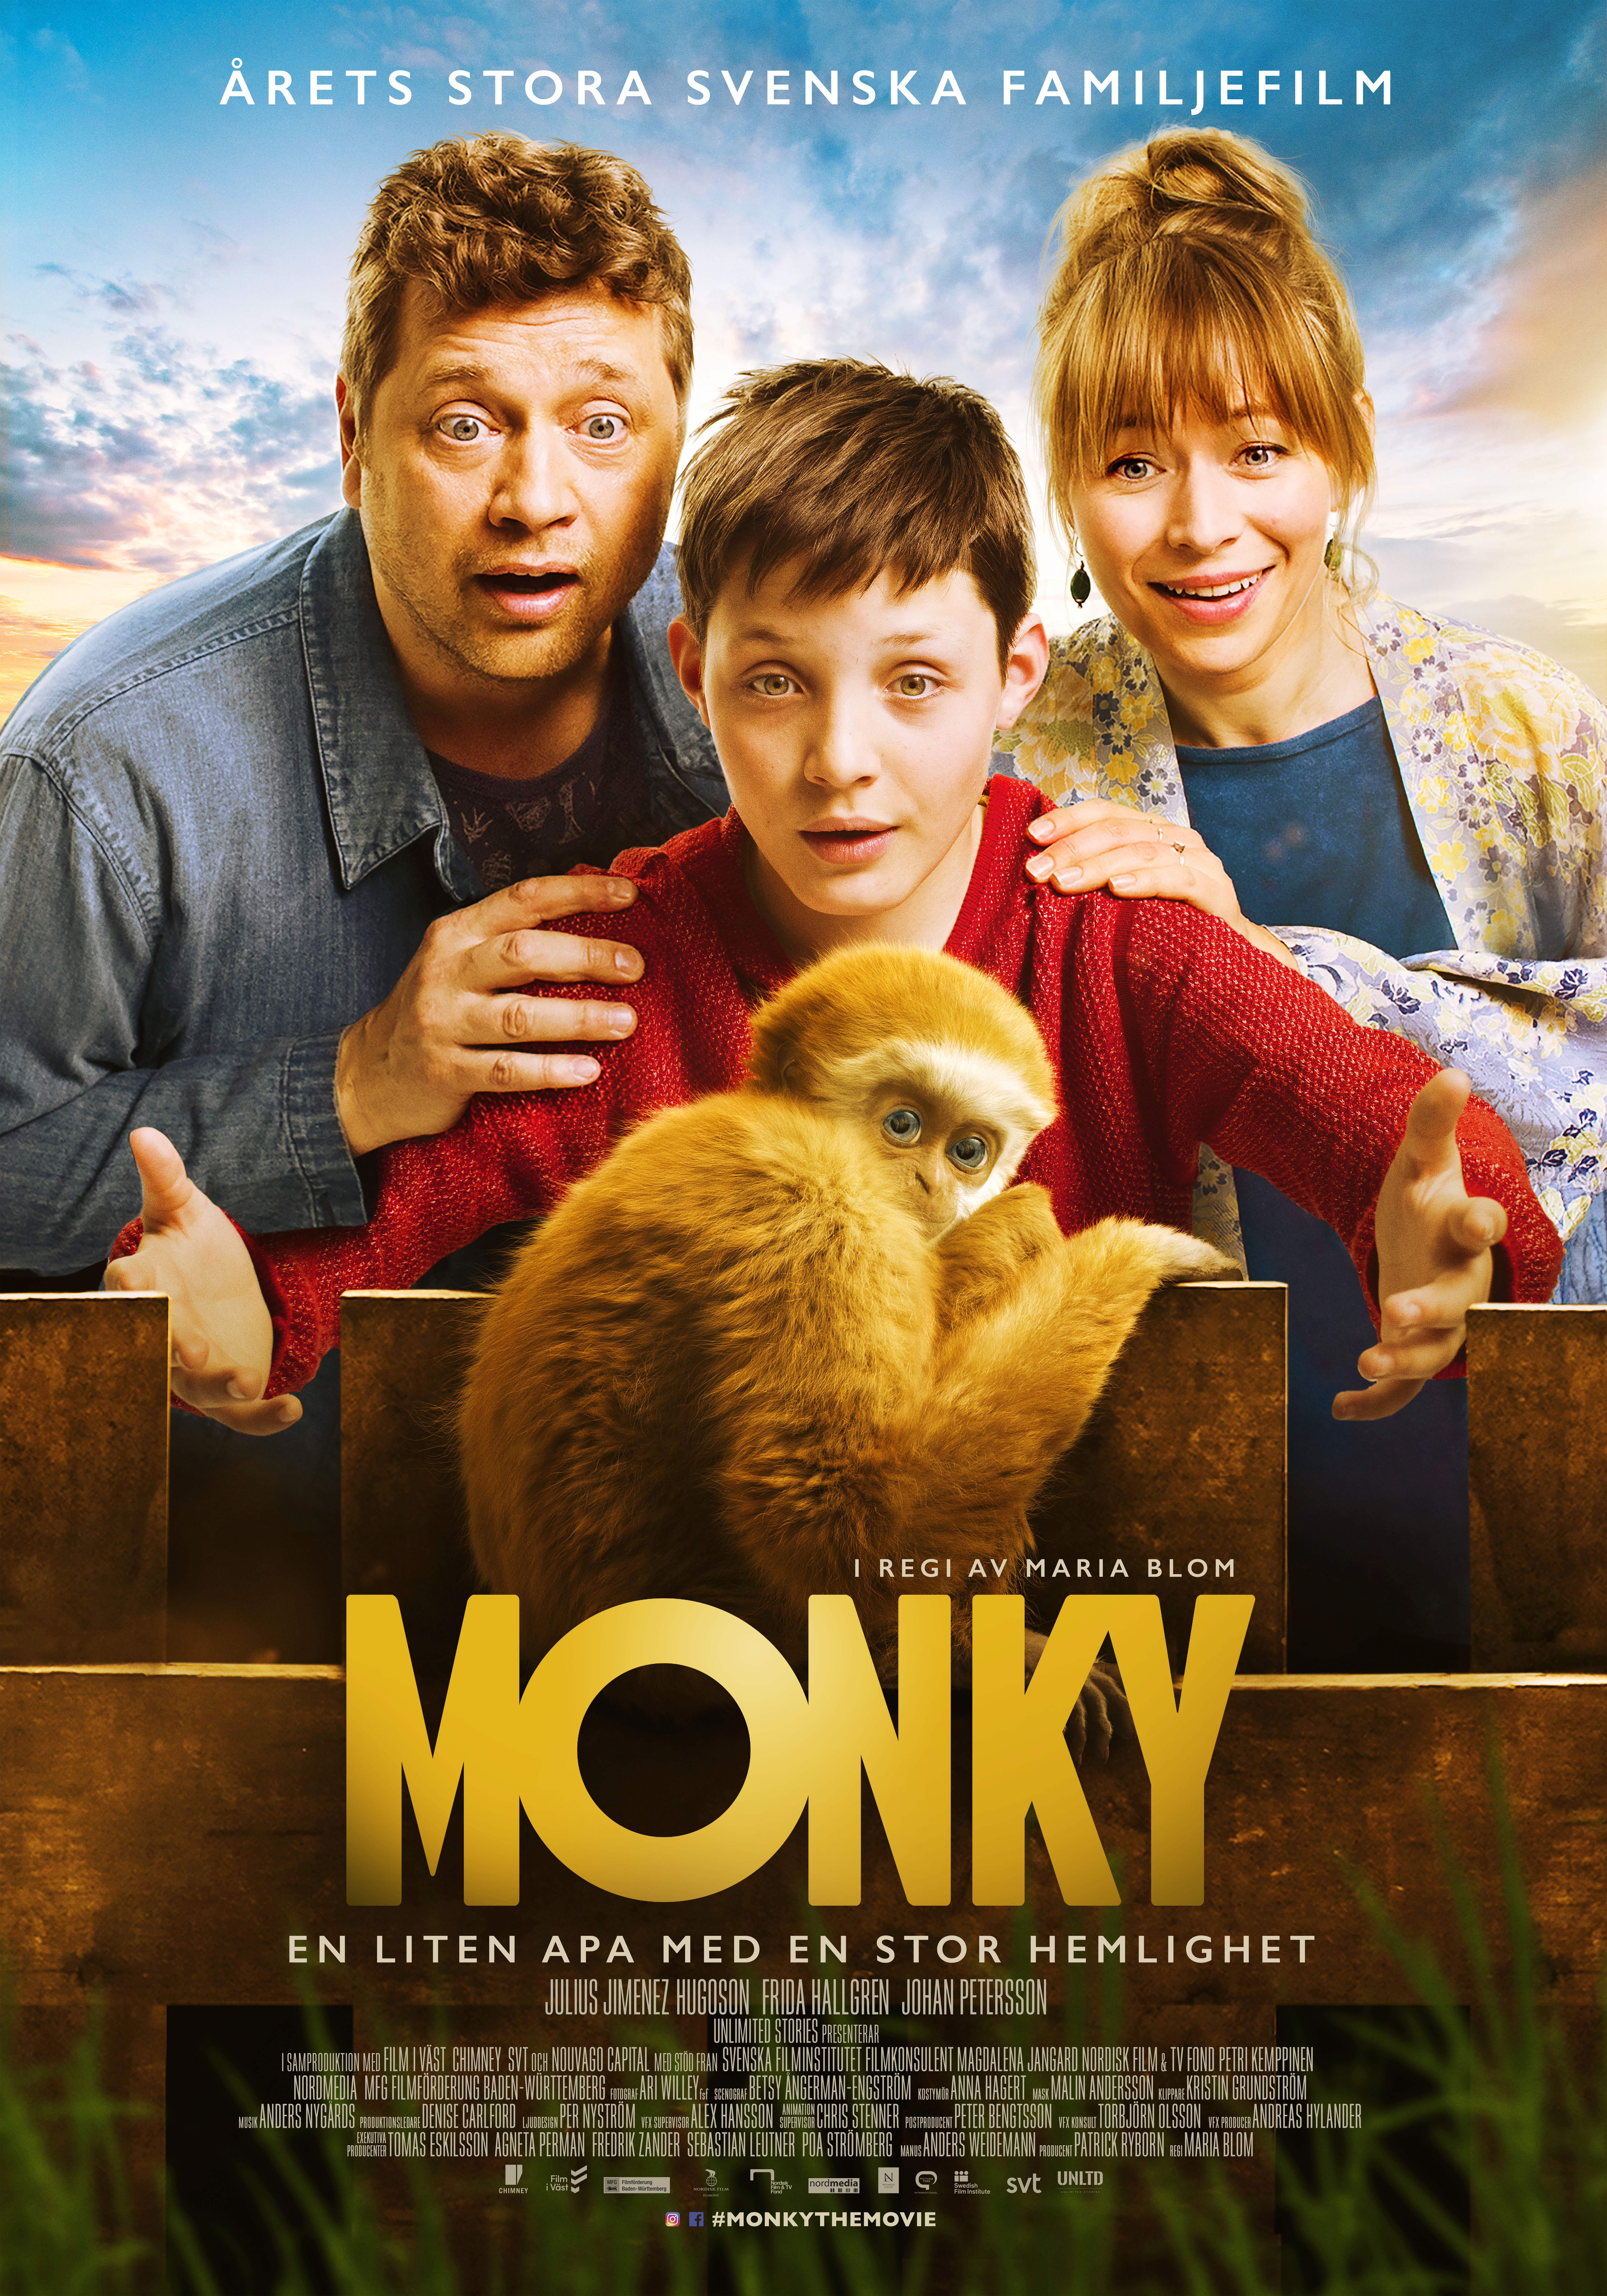 Nonton film Monky layarkaca21 indoxx1 ganool online streaming terbaru